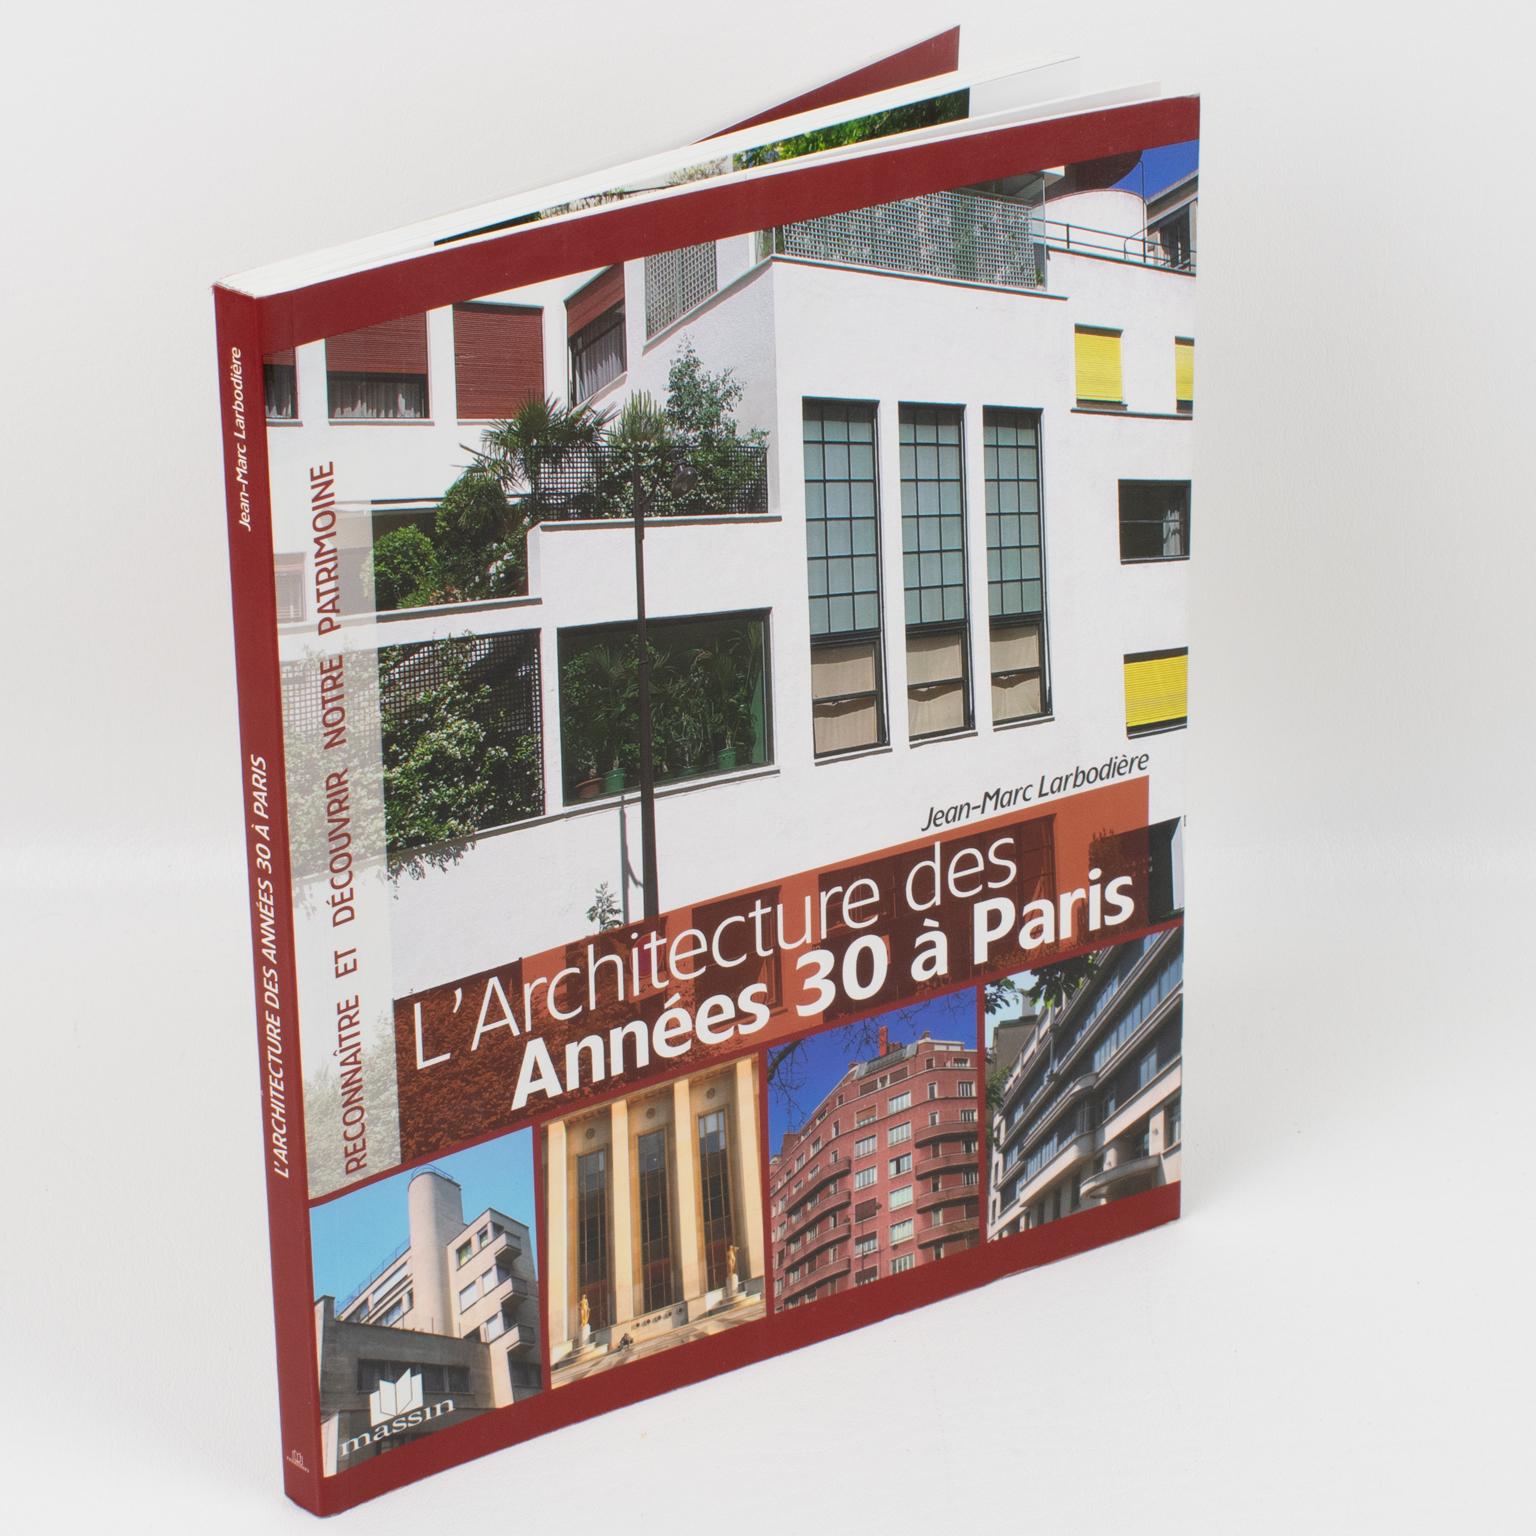 L'Architecture des Années 30 a Paris (Architektur der 1930er Jahre in Paris), französisches Buch von Jean-Marc Larbodiere.
Der Internationale Stil geht auf die moderne Bewegung (Bauhaus in Deutschland, Le Corbusier und Esprit Nouveau in Frankreich)